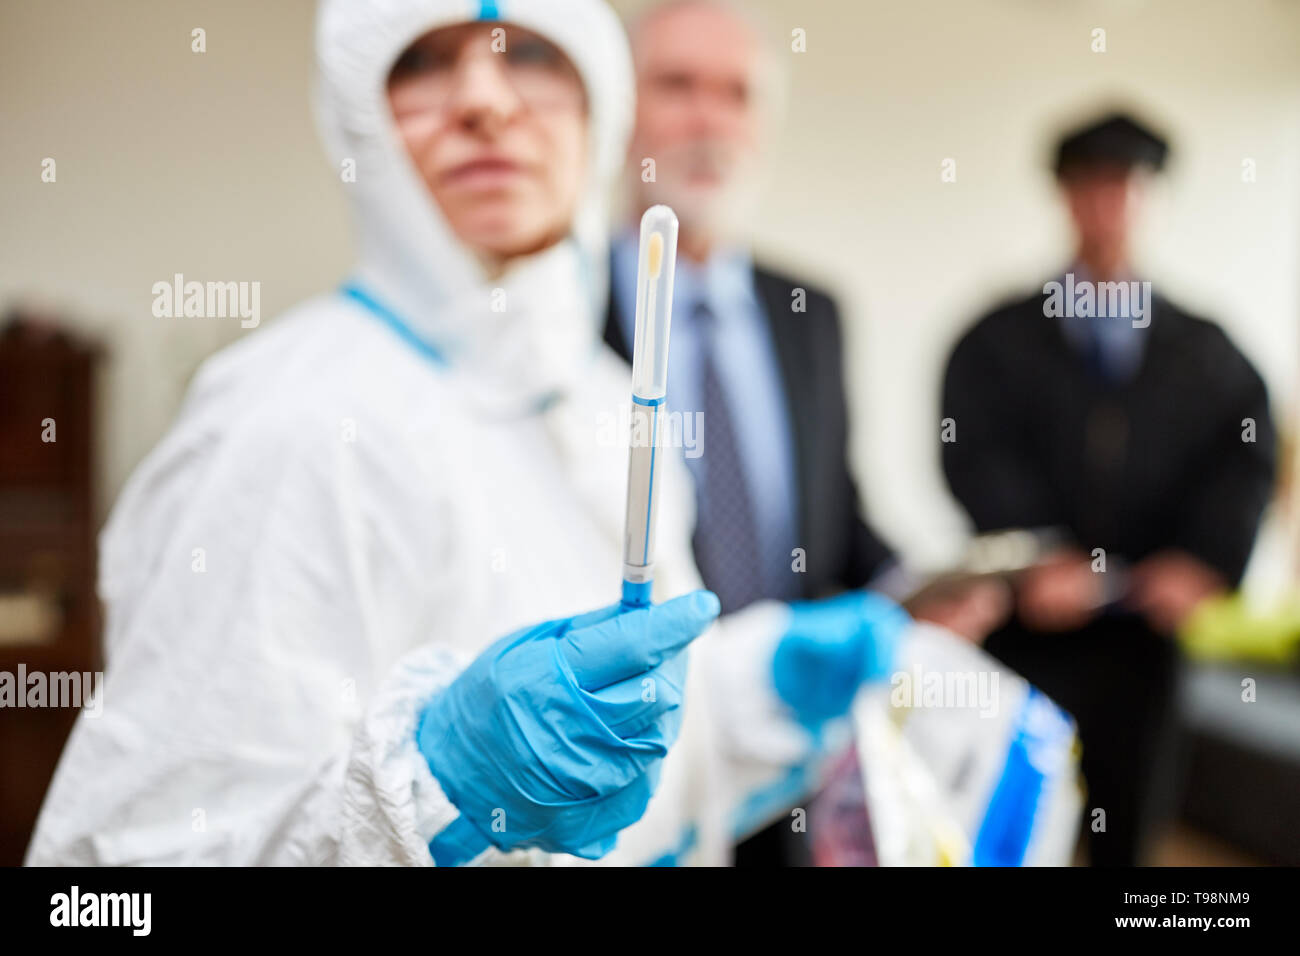 Tecnico forense mostra i tamponi per rimuovere il DNA in scena dopo un crimine Foto Stock